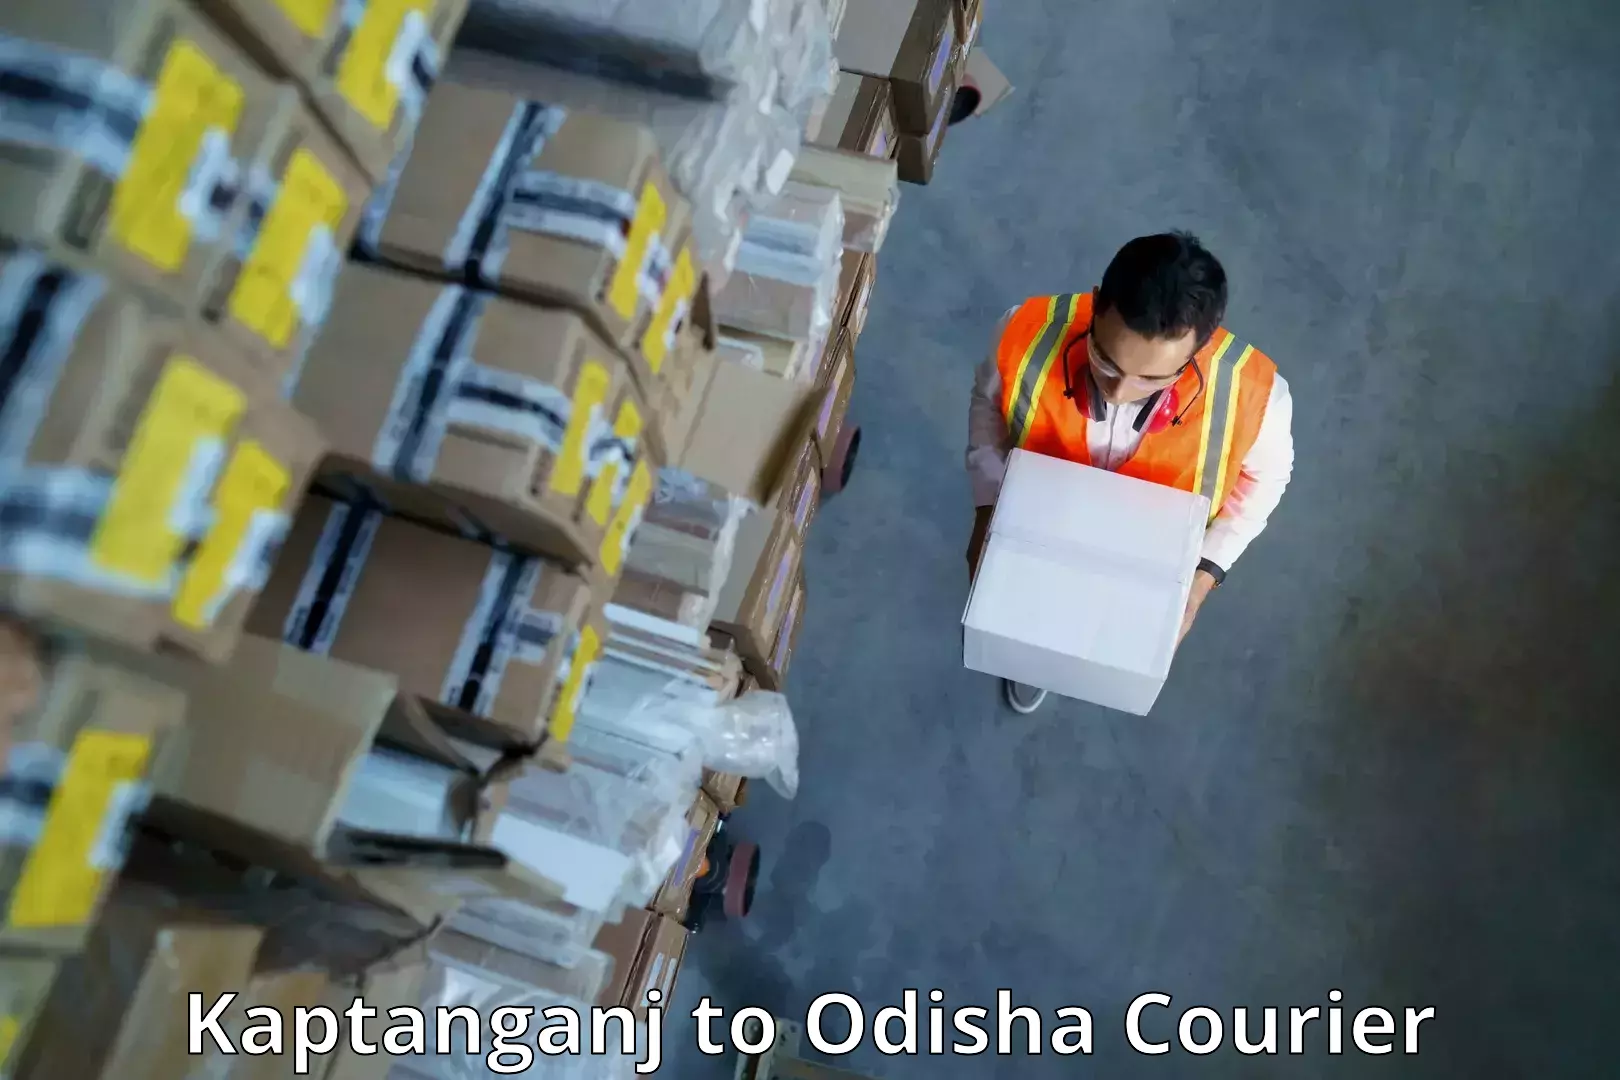 Express package handling Kaptanganj to Odisha